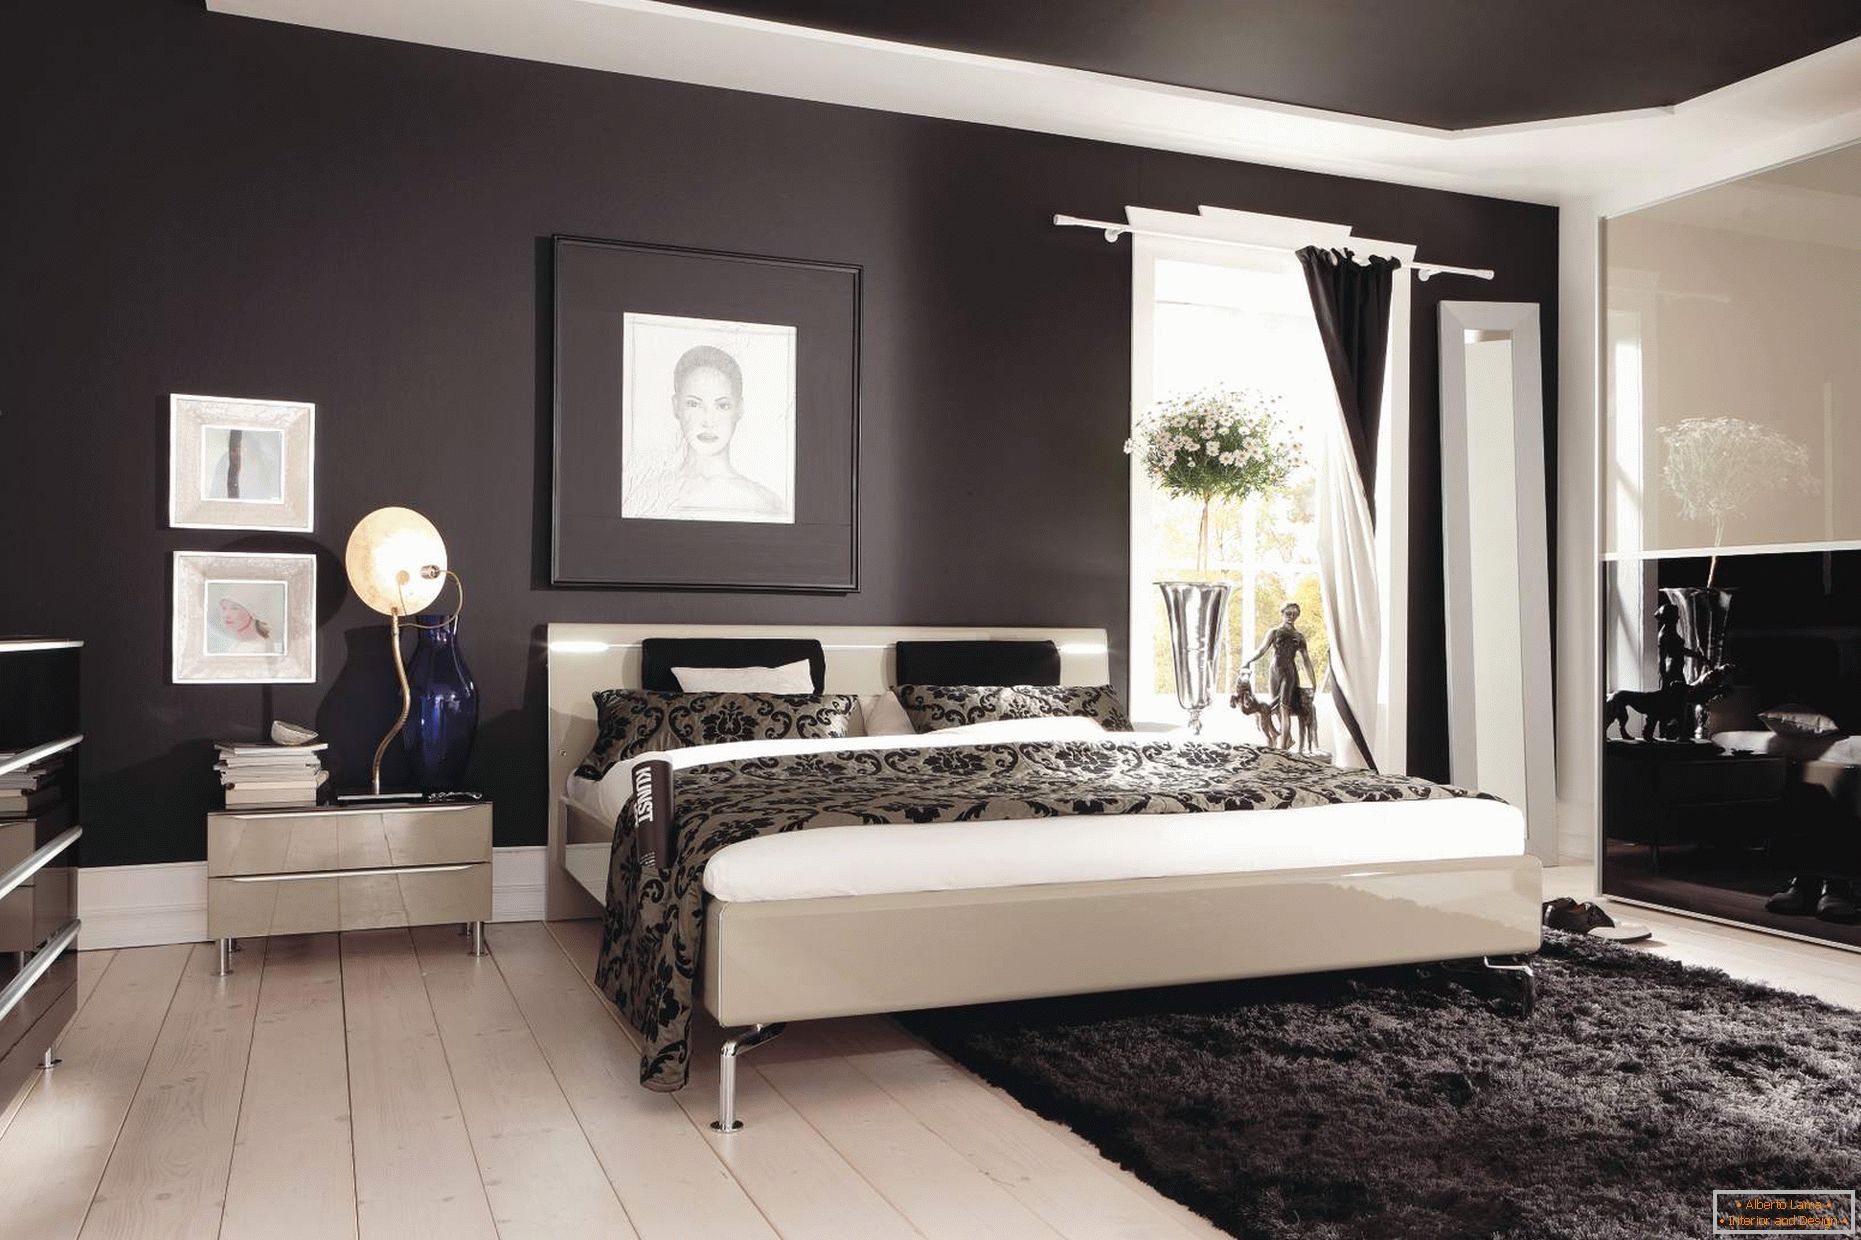 Soffitto e pareti nere nella camera da letto